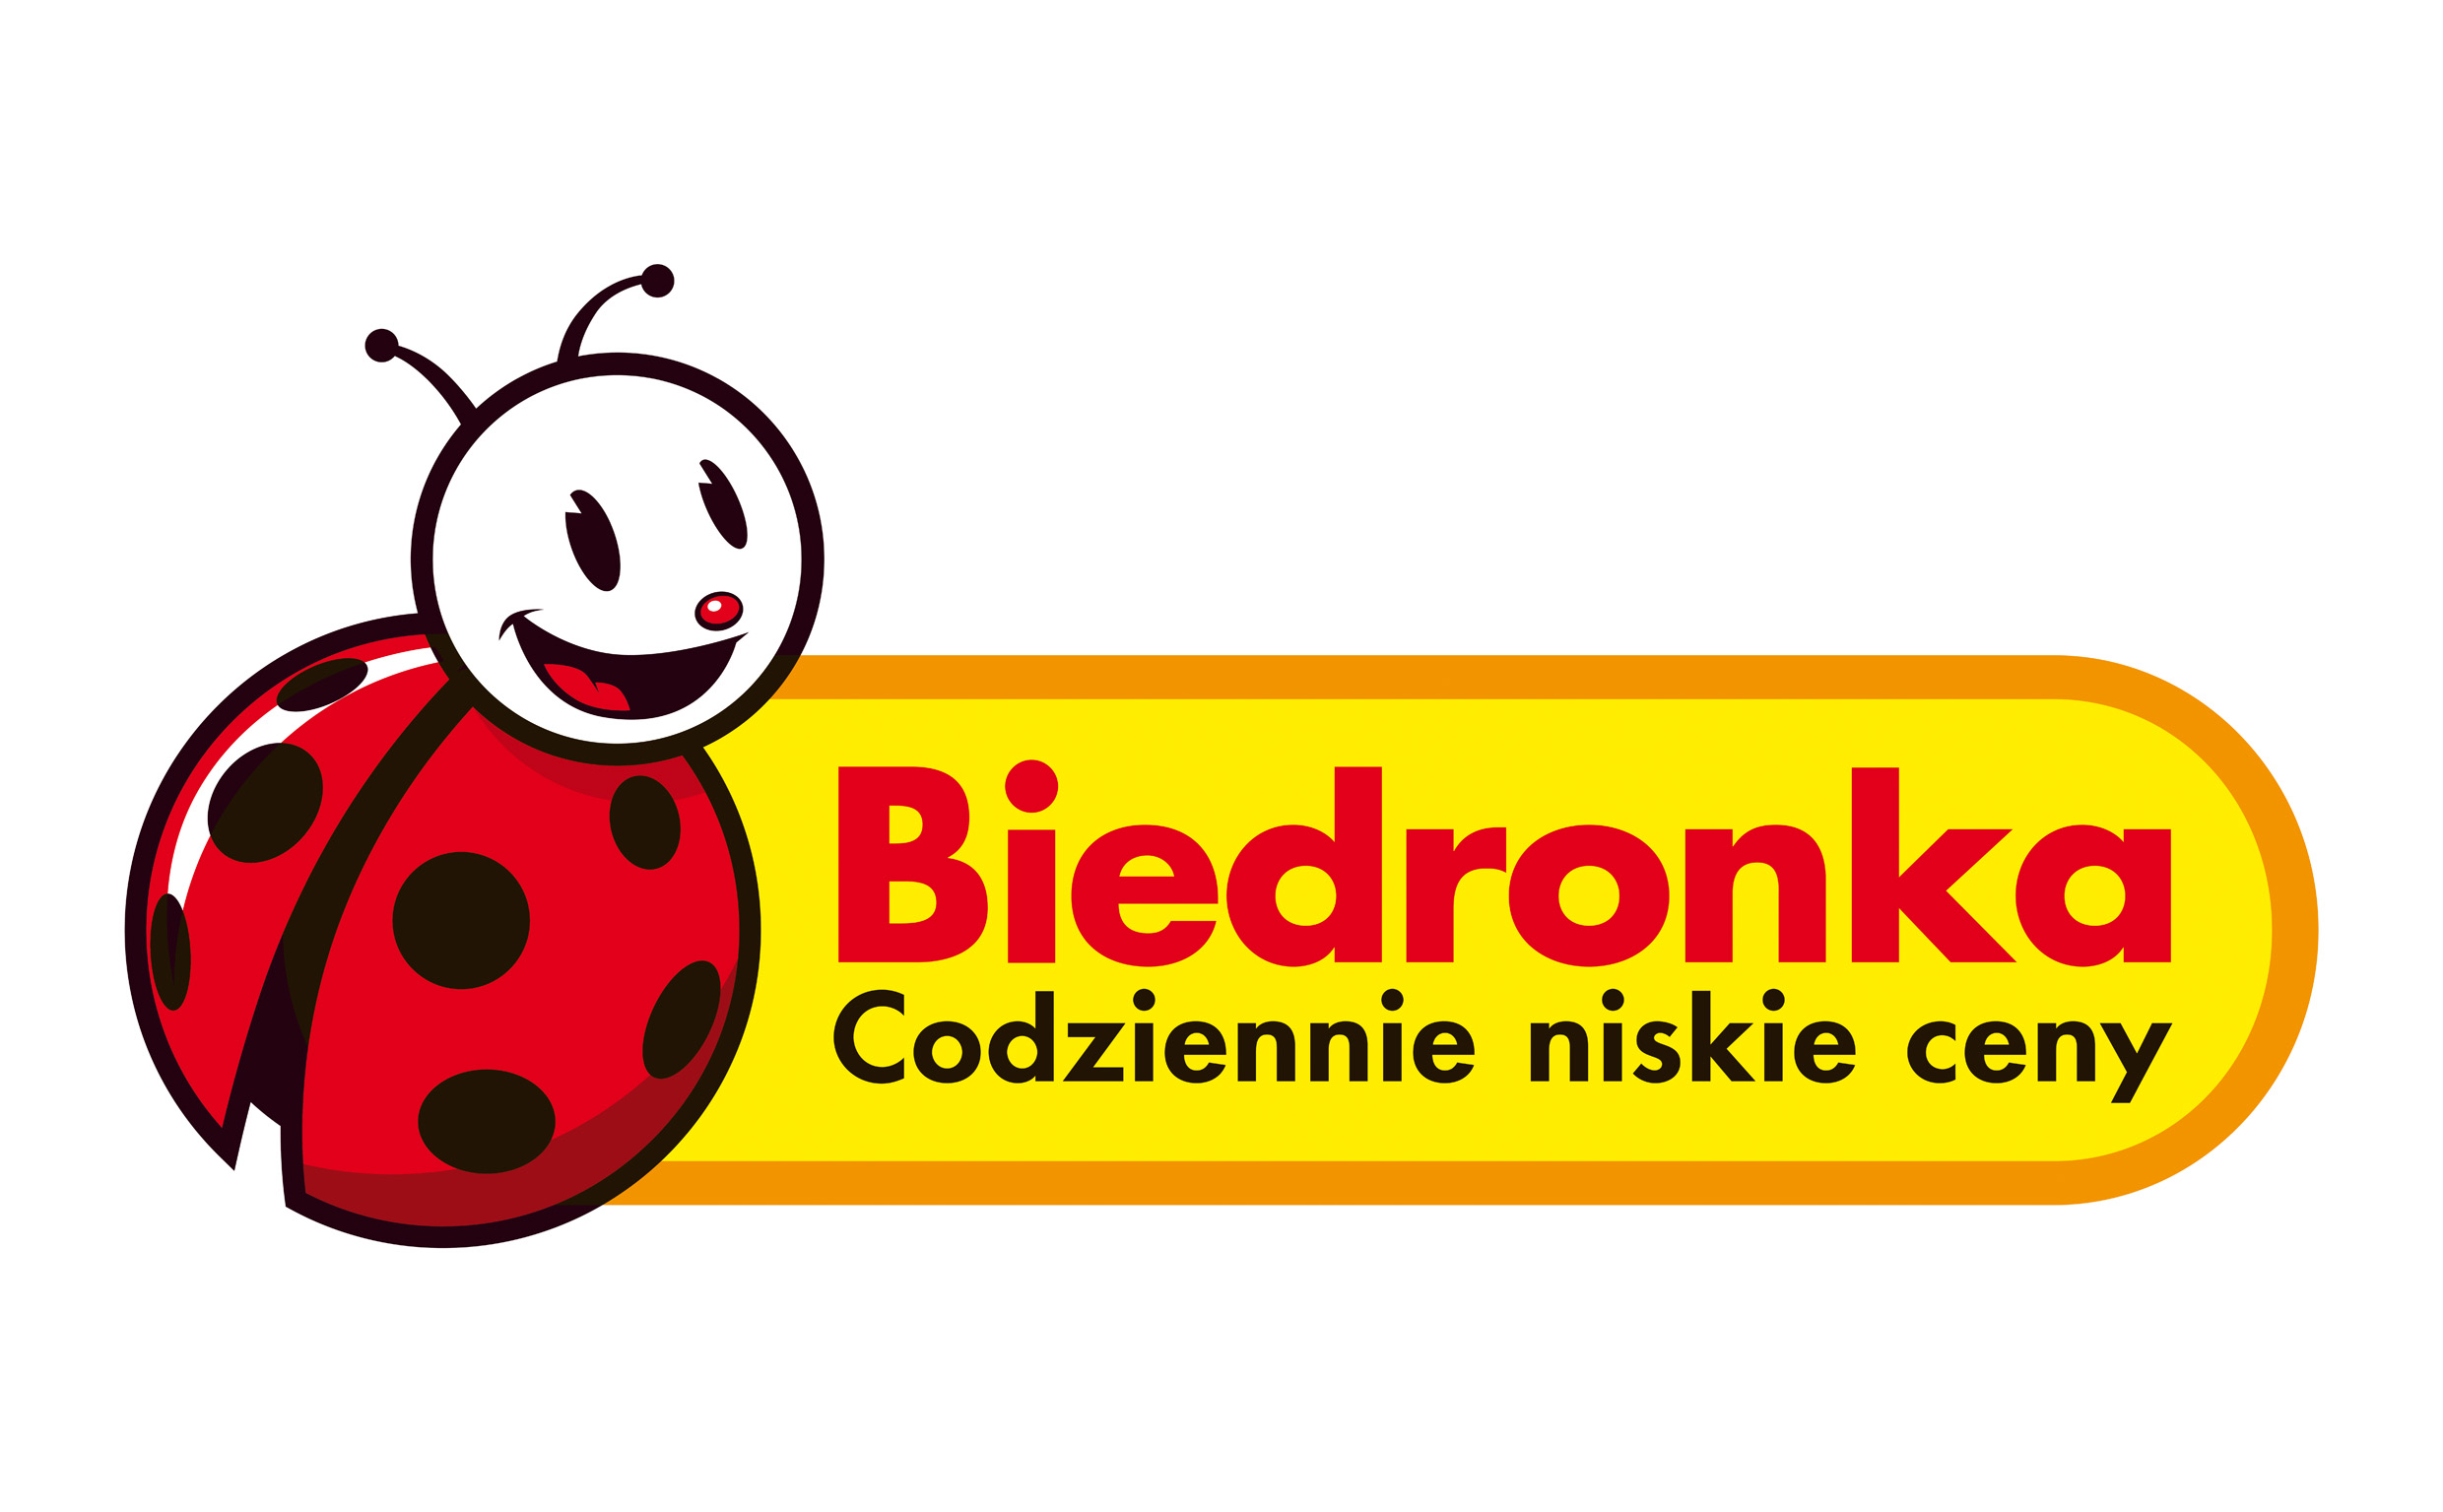 Właściciel sieci Biedronka drugą co  do wielkości firmą w Polsce